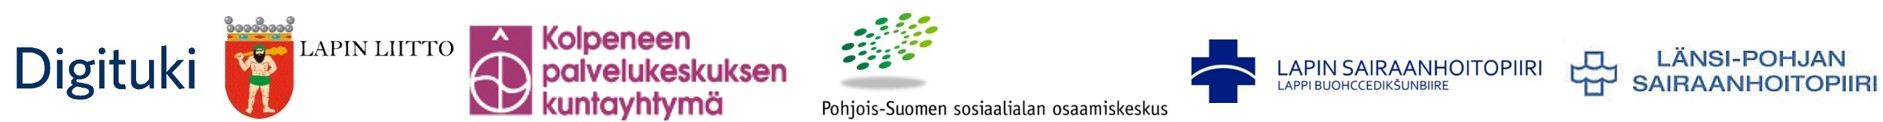 Digituki, Lapin liitto, Kolpeneen palvelukeskuksen kuntayhtymän, Poske, Lapin sairaanhoitopiirin ja Länsi-Pohjan sairaanhoitopiirin logot